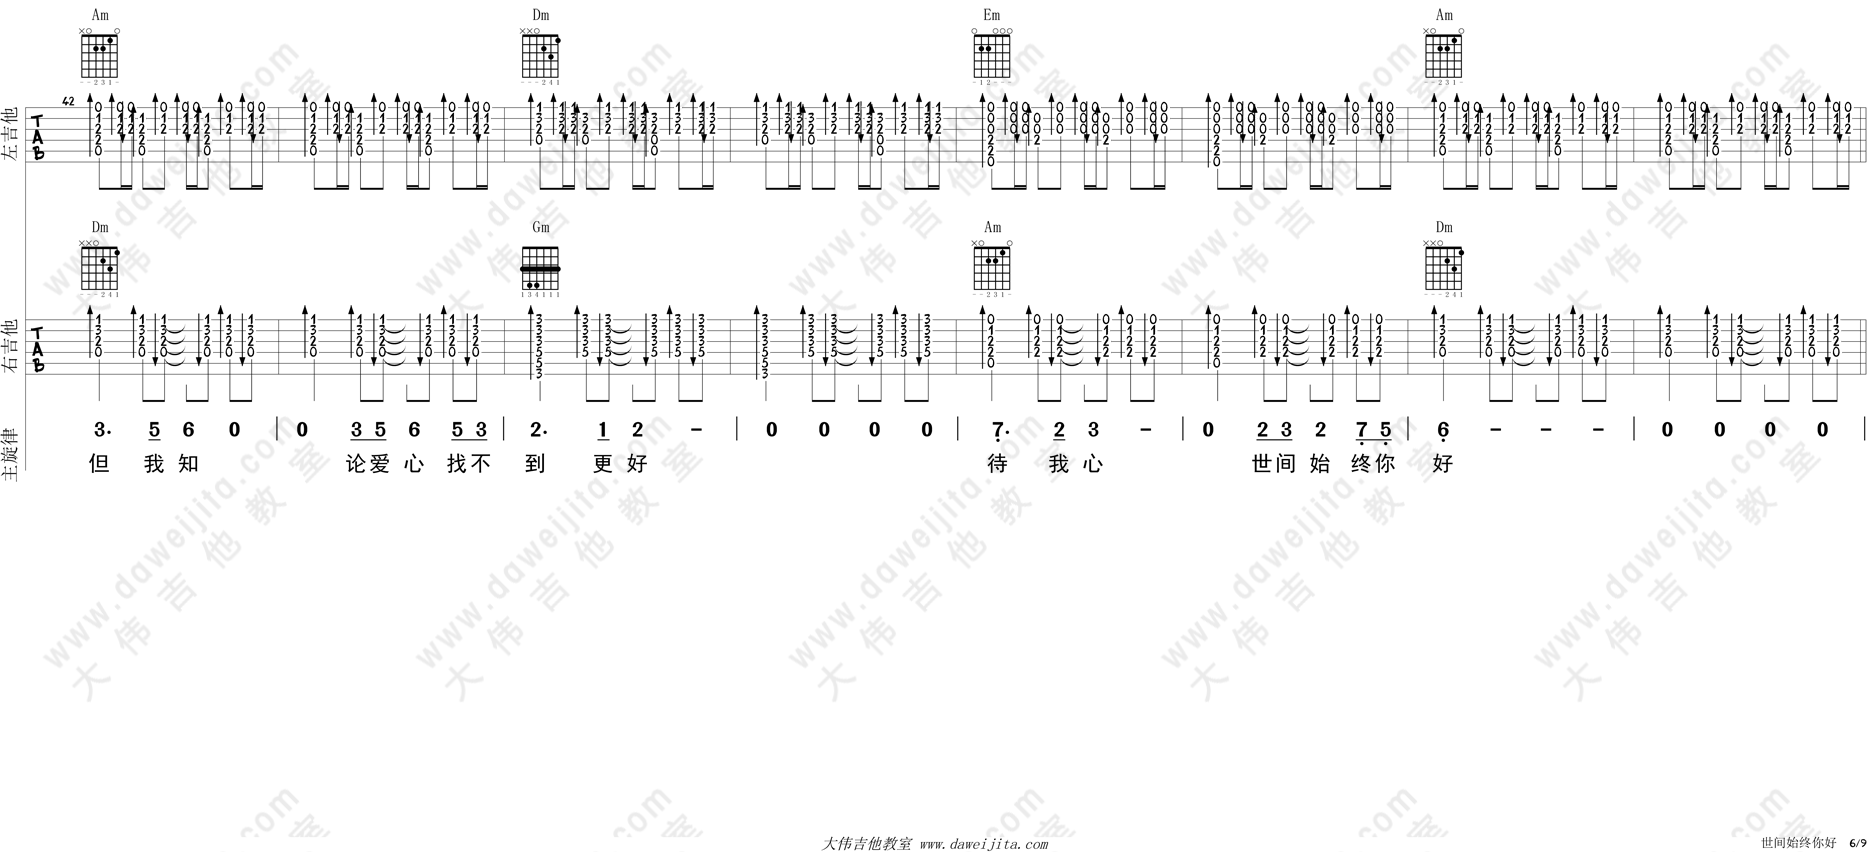 罗文,甄妮《世间始终你好》吉他谱(C调)-Guitar Music Score